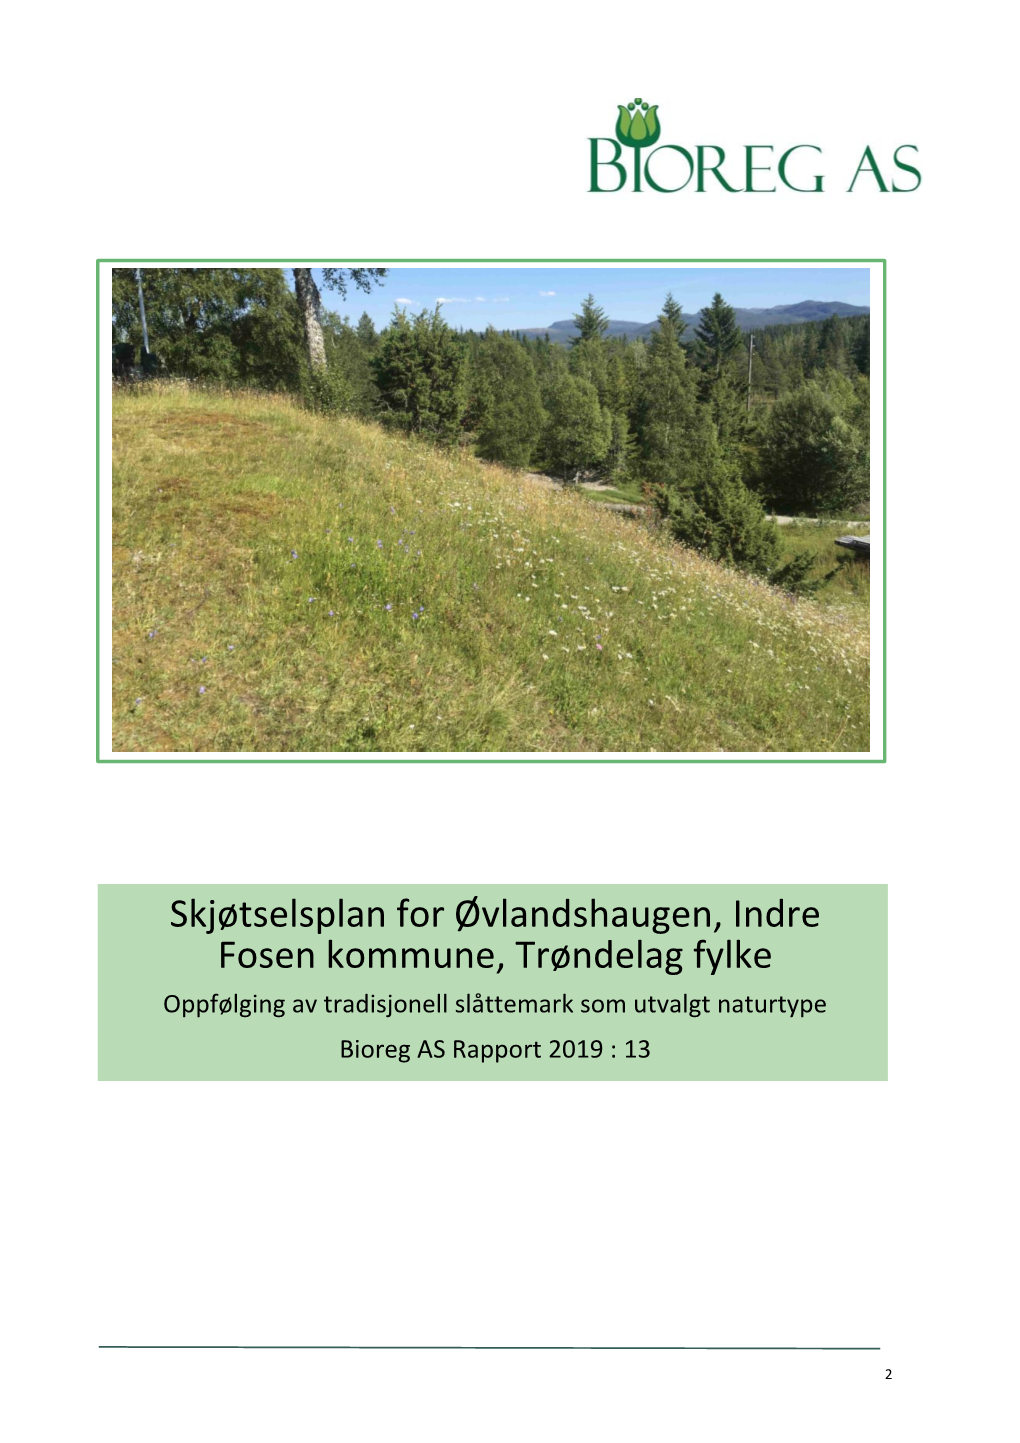 Skjøtselsplan for Øvlandshaugen, Indre Fosen Kommune, Trøndelag Fylke Oppfølging Av Tradisjonell Slåttemark Som Utvalgt Naturtype Bioreg AS Rapport 2019 : 13